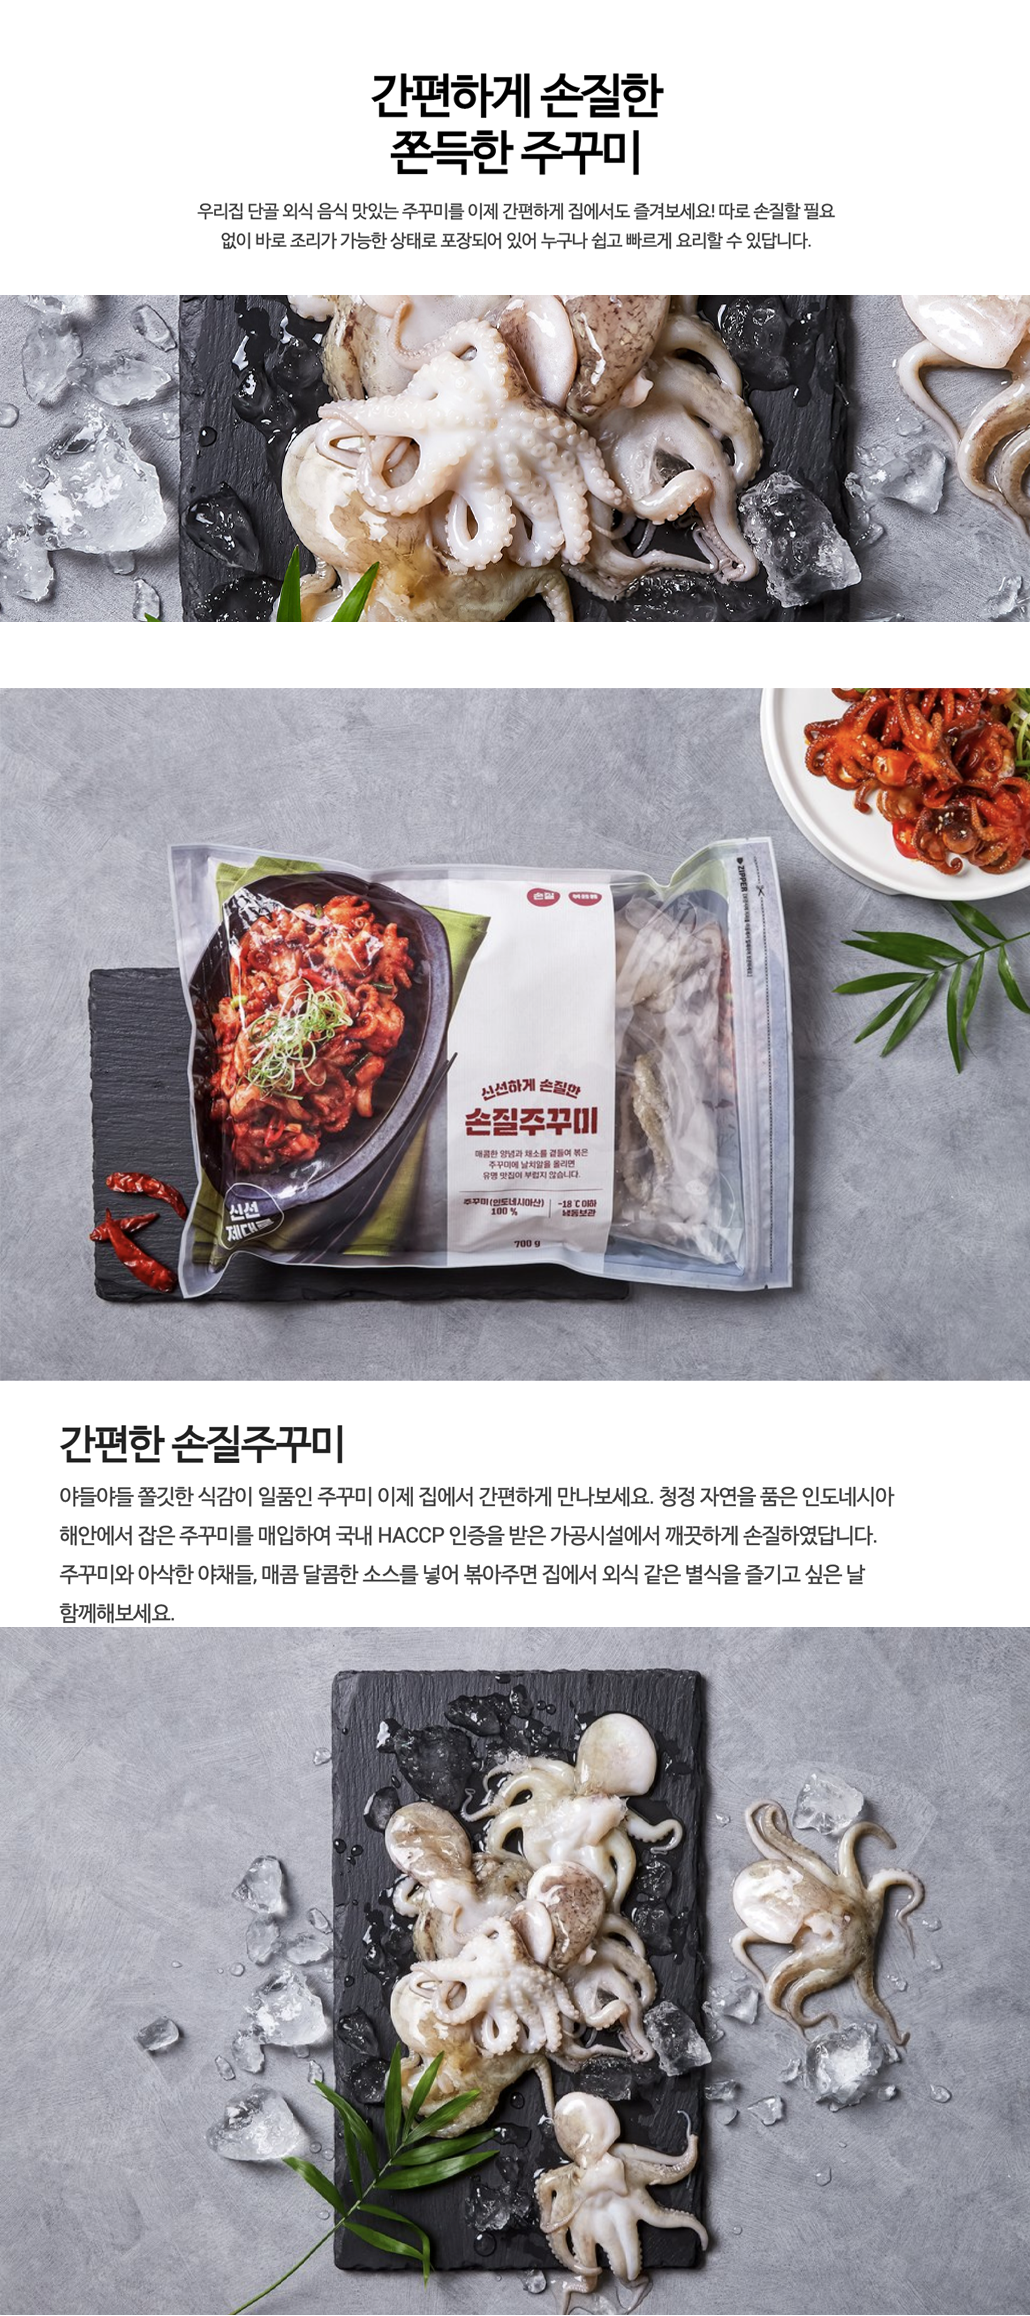 韓國食品-[이마트] 손질주꾸미 700g